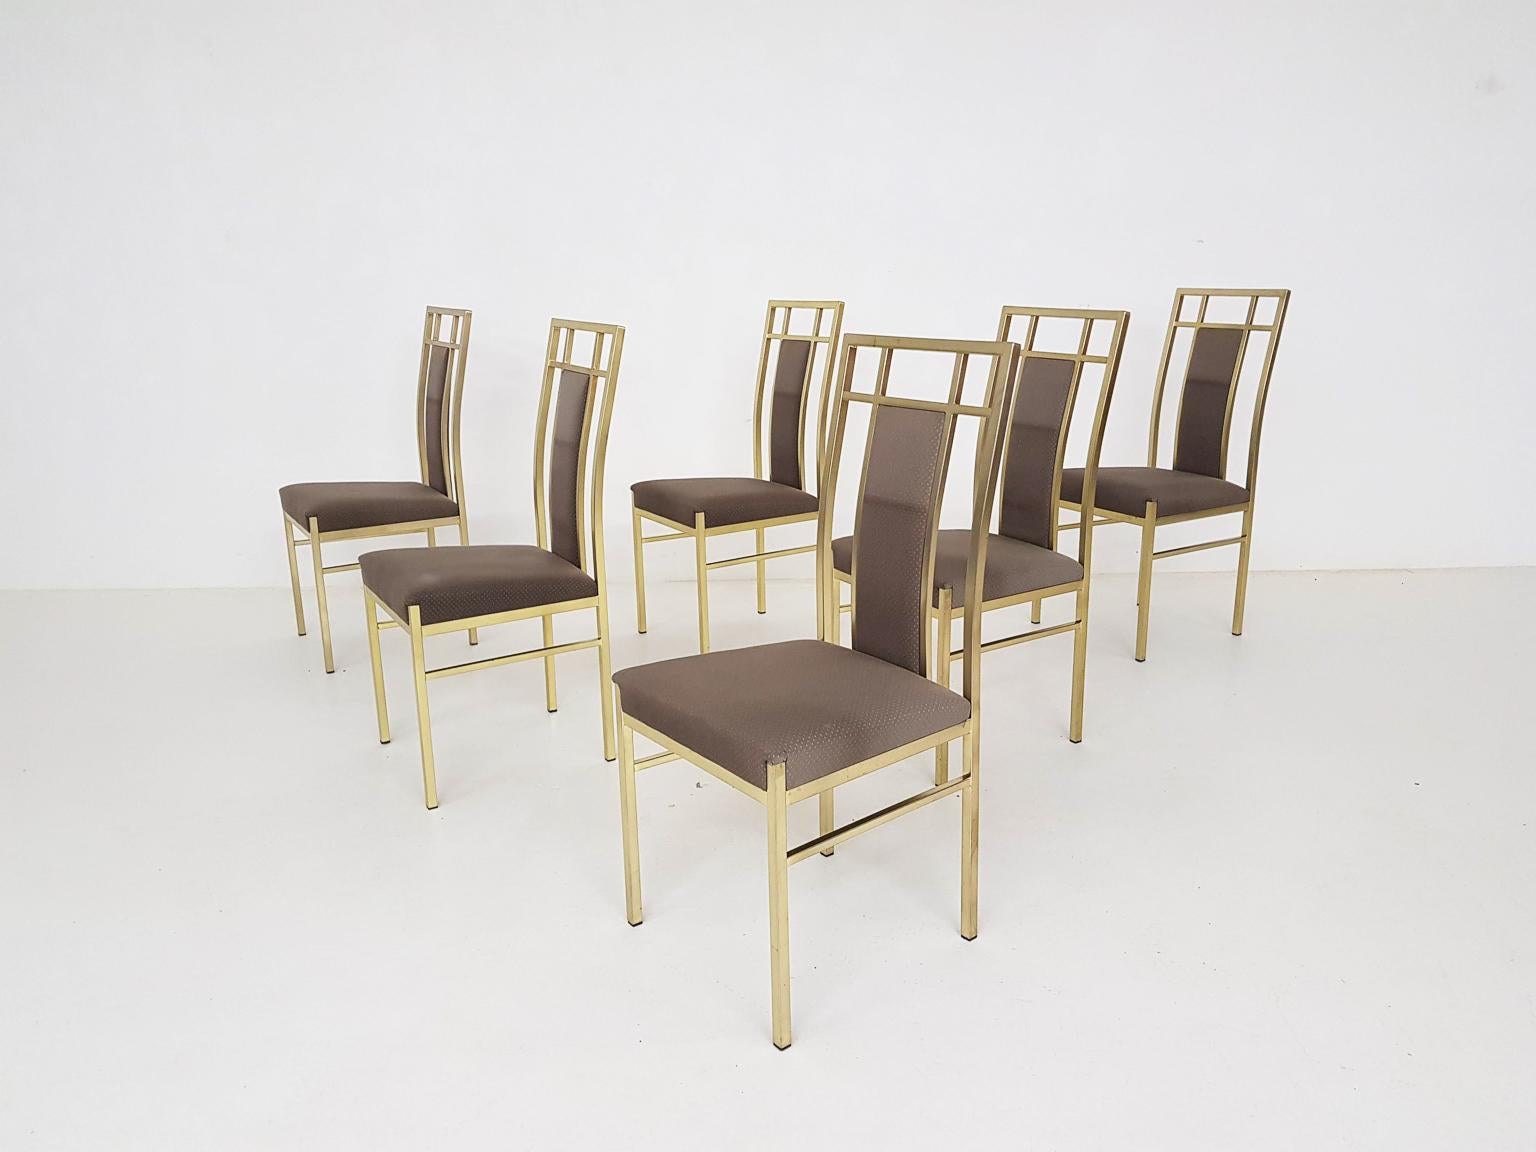 Satz von 6 messingfarbenen Esszimmerstühlen im Hollywood-Regency-Stil. Der Stoff ist original und hat ein schönes goldenes Muster, das perfekt zum Rahmen passt. Der Stoff hat zwar ein paar kleine Flecken, aber wir finden es schöner, diesen